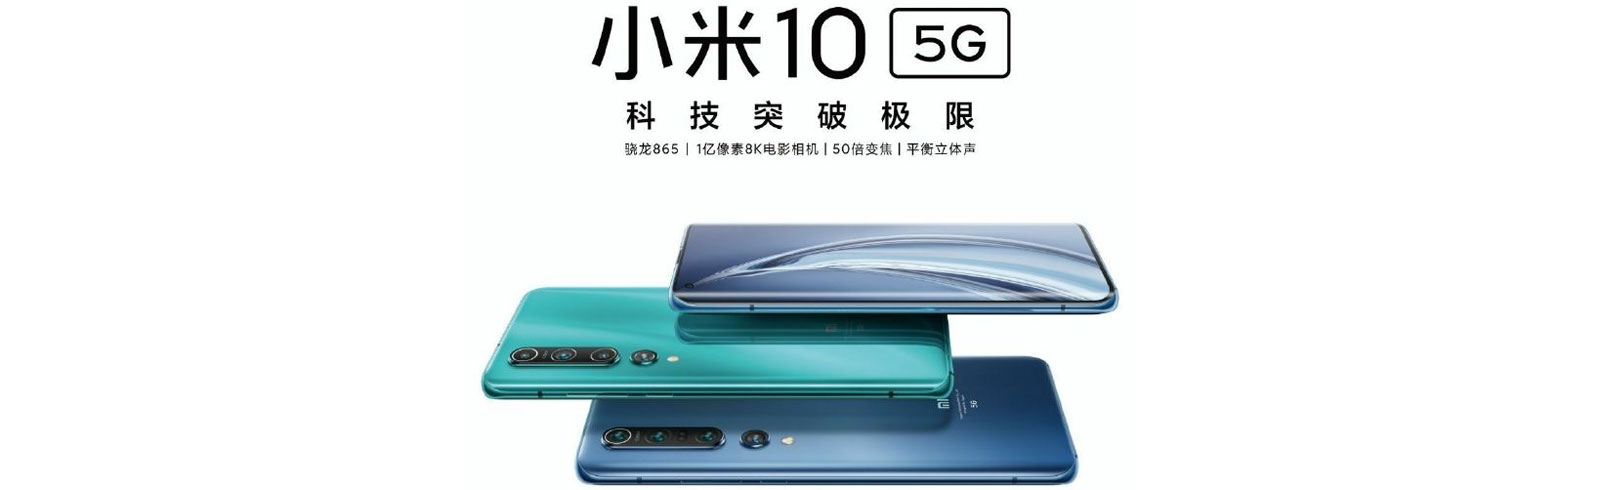 Xiaomi Mi 10 5G xuất hiện trên poster chính thức, dòng Mi 10 sẽ được công bố vào ngày 13 tháng 2